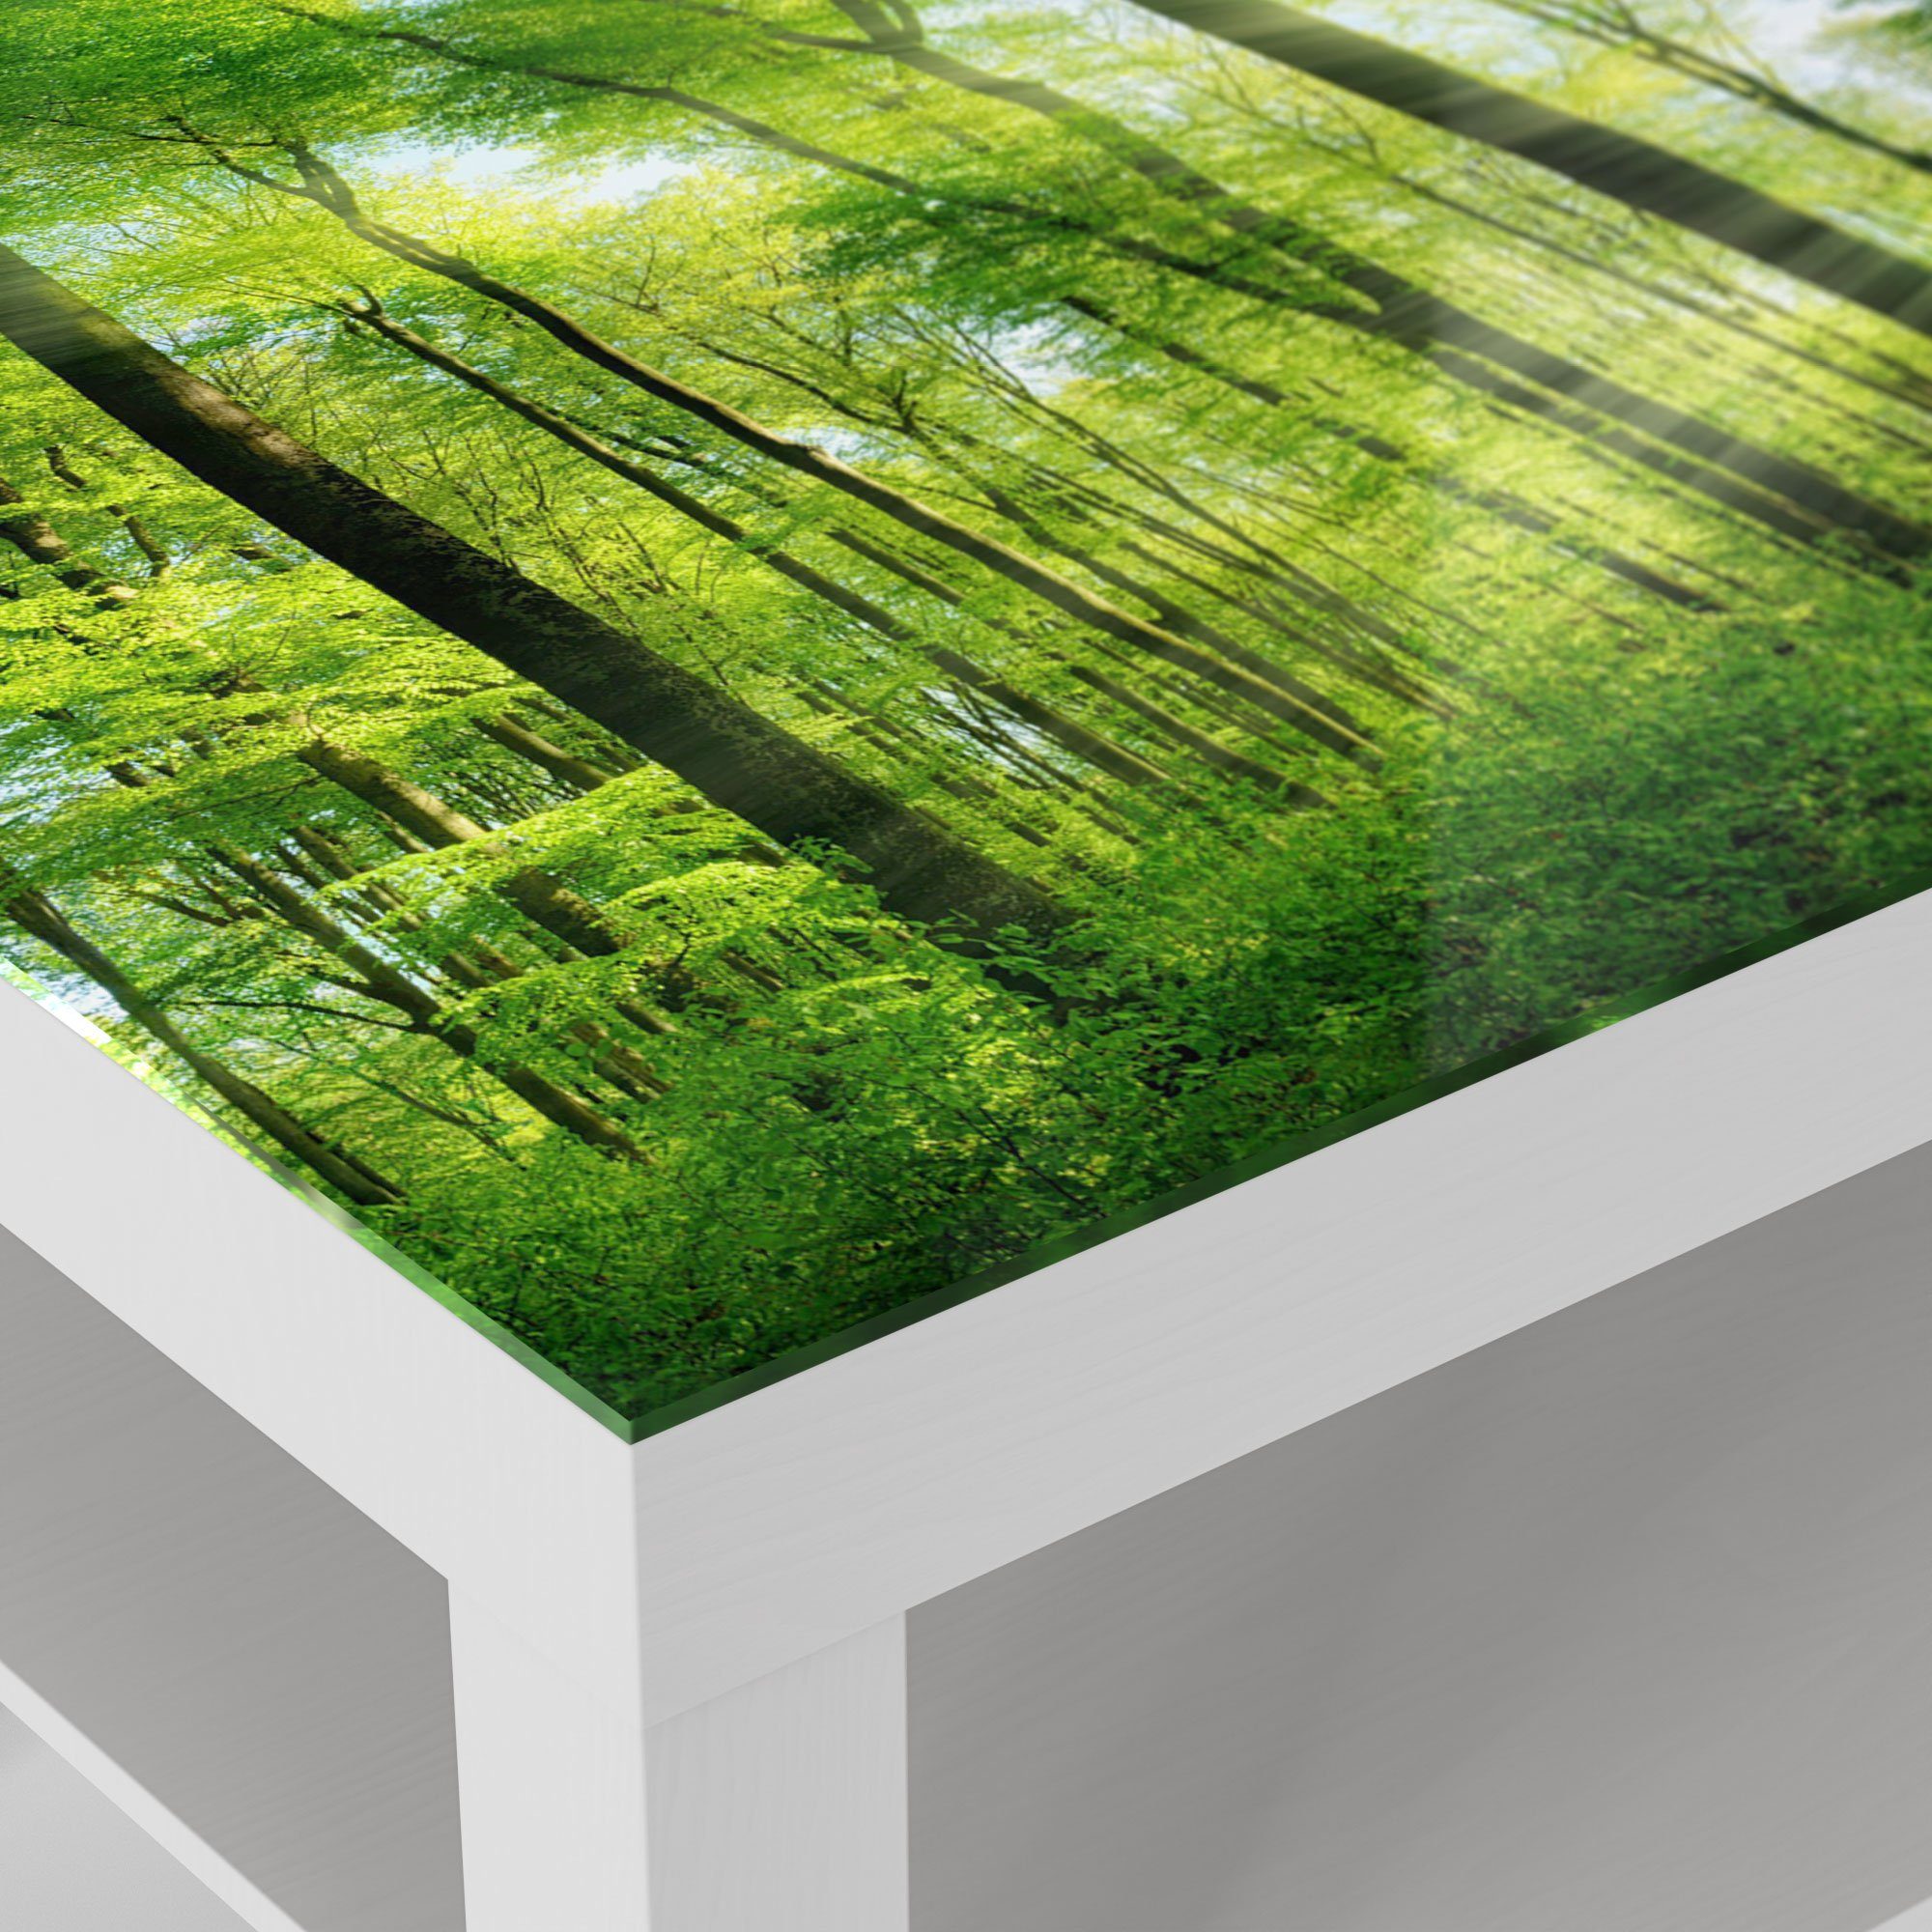 DEQORI 'Sonne Couchtisch Weiß modern Beistelltisch Glastisch Glas Wald', durchbricht